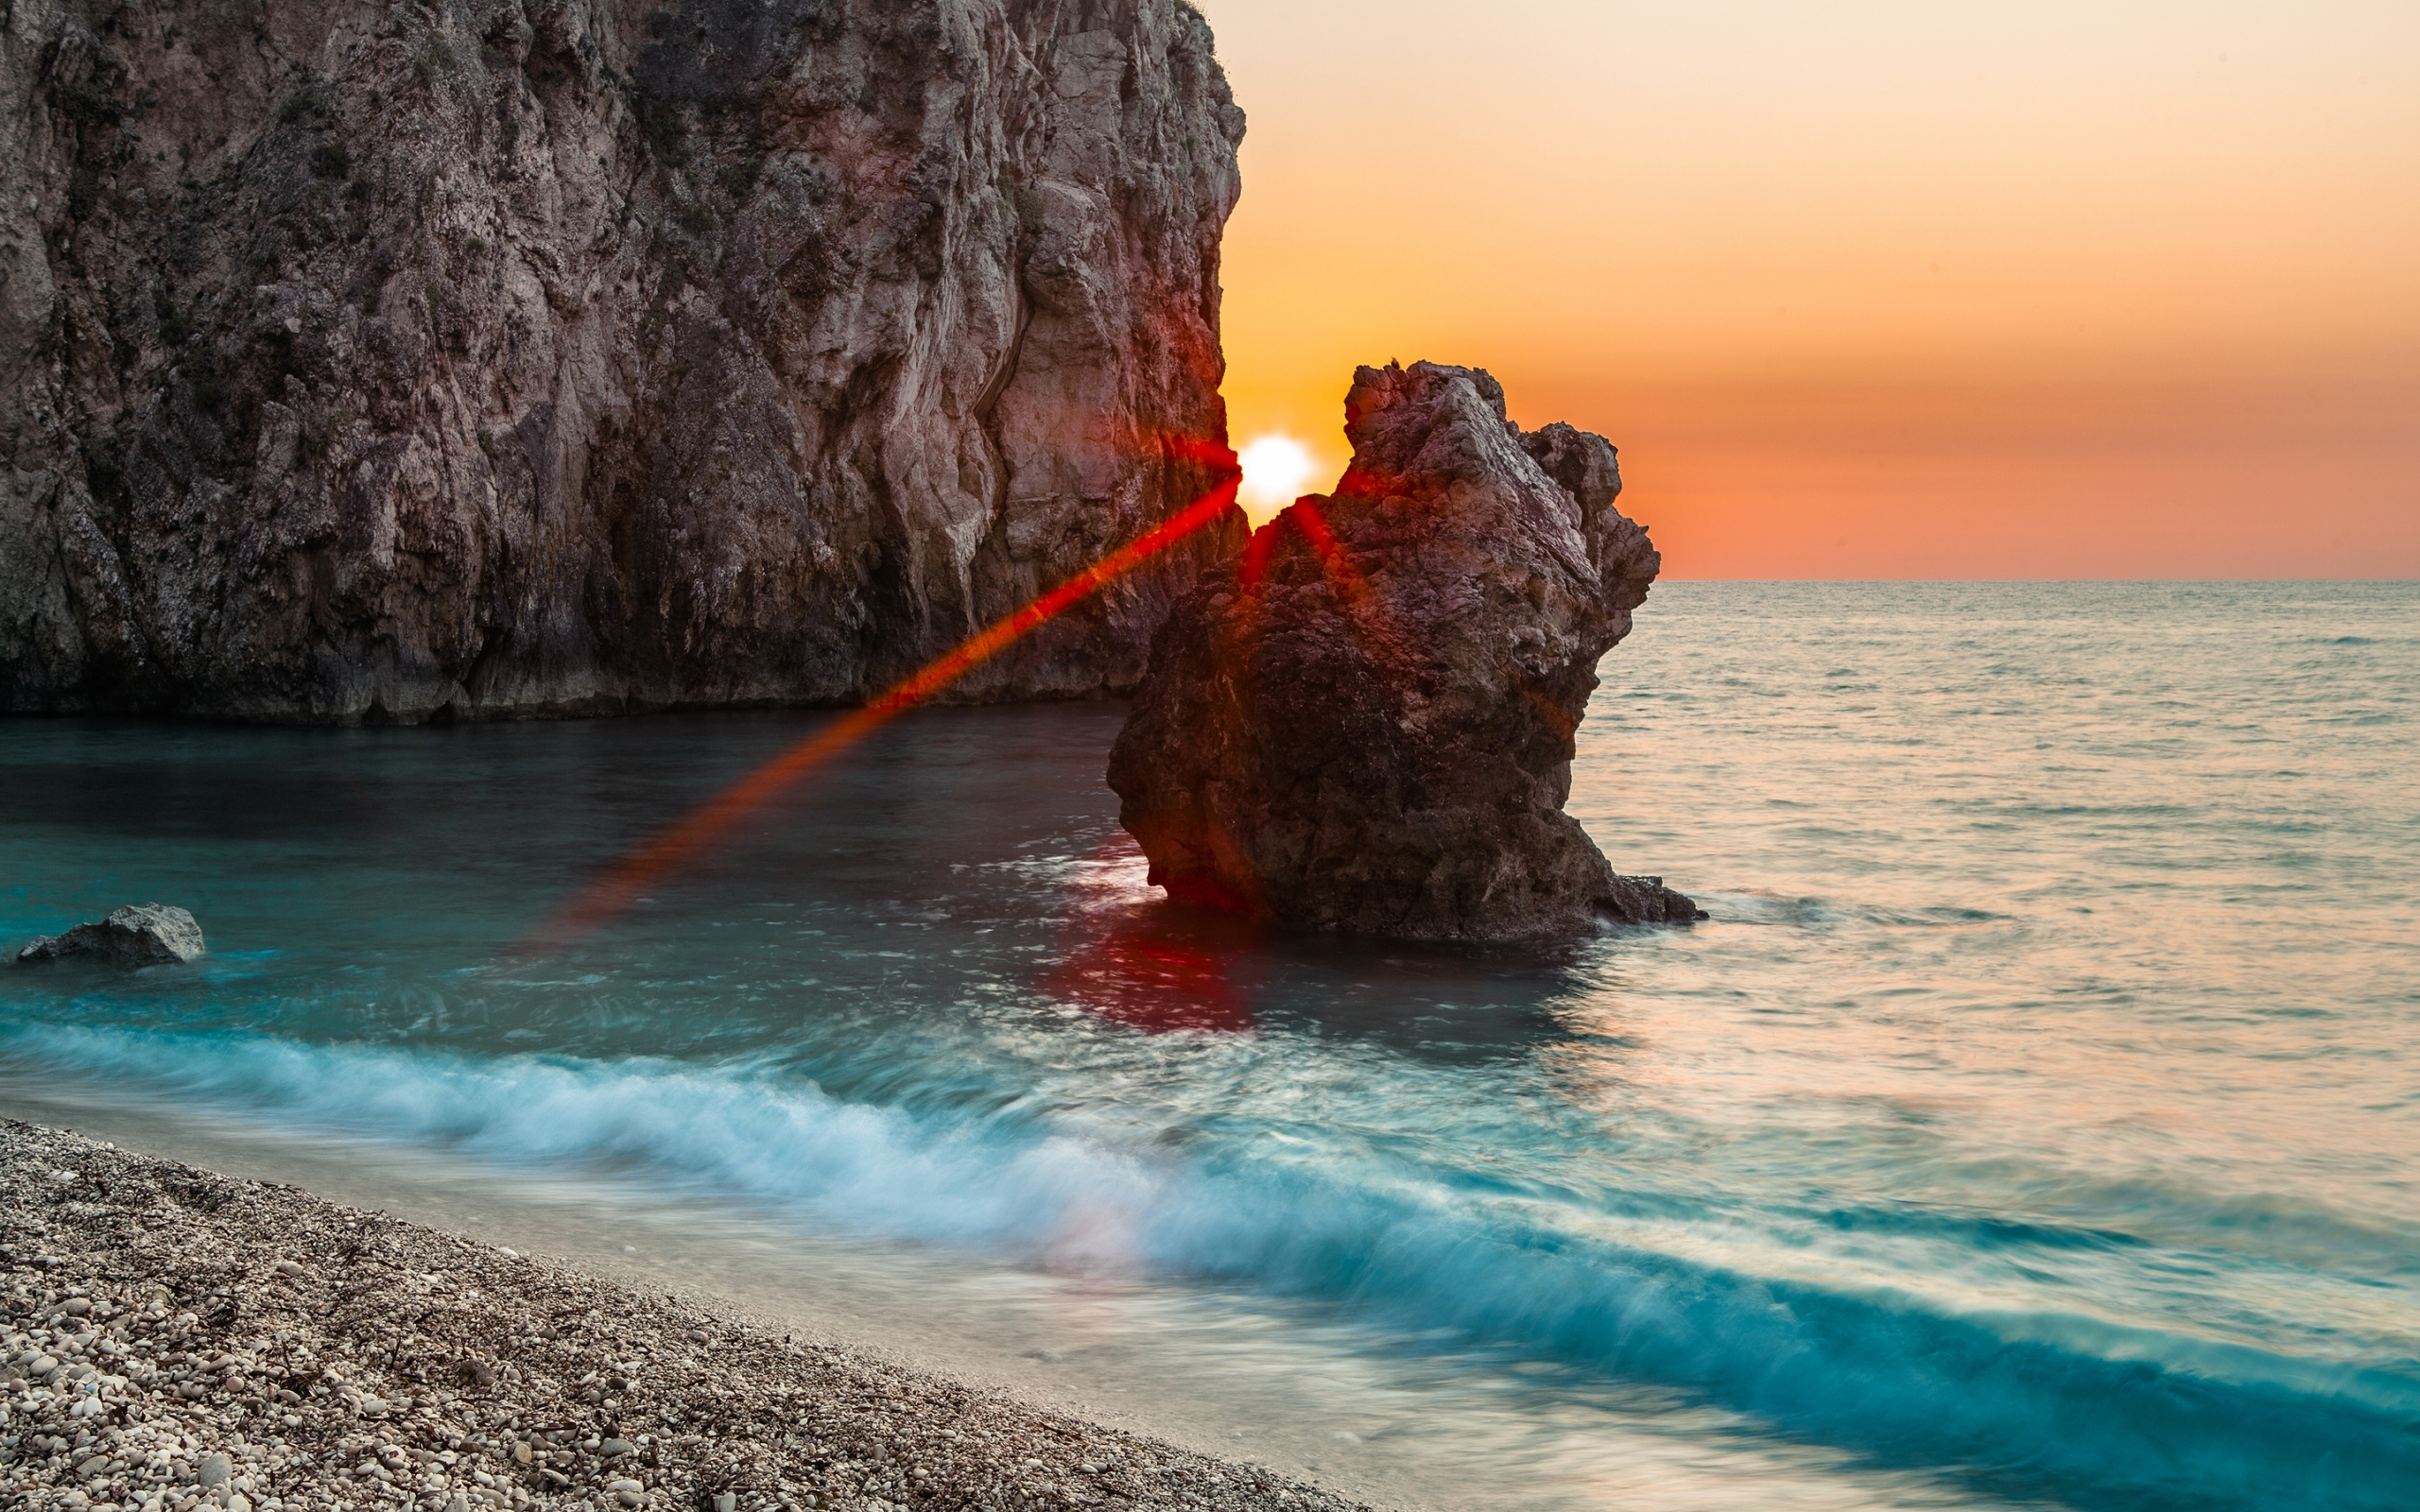 Sunset Between Rocks for 2560 x 1600 widescreen resolution